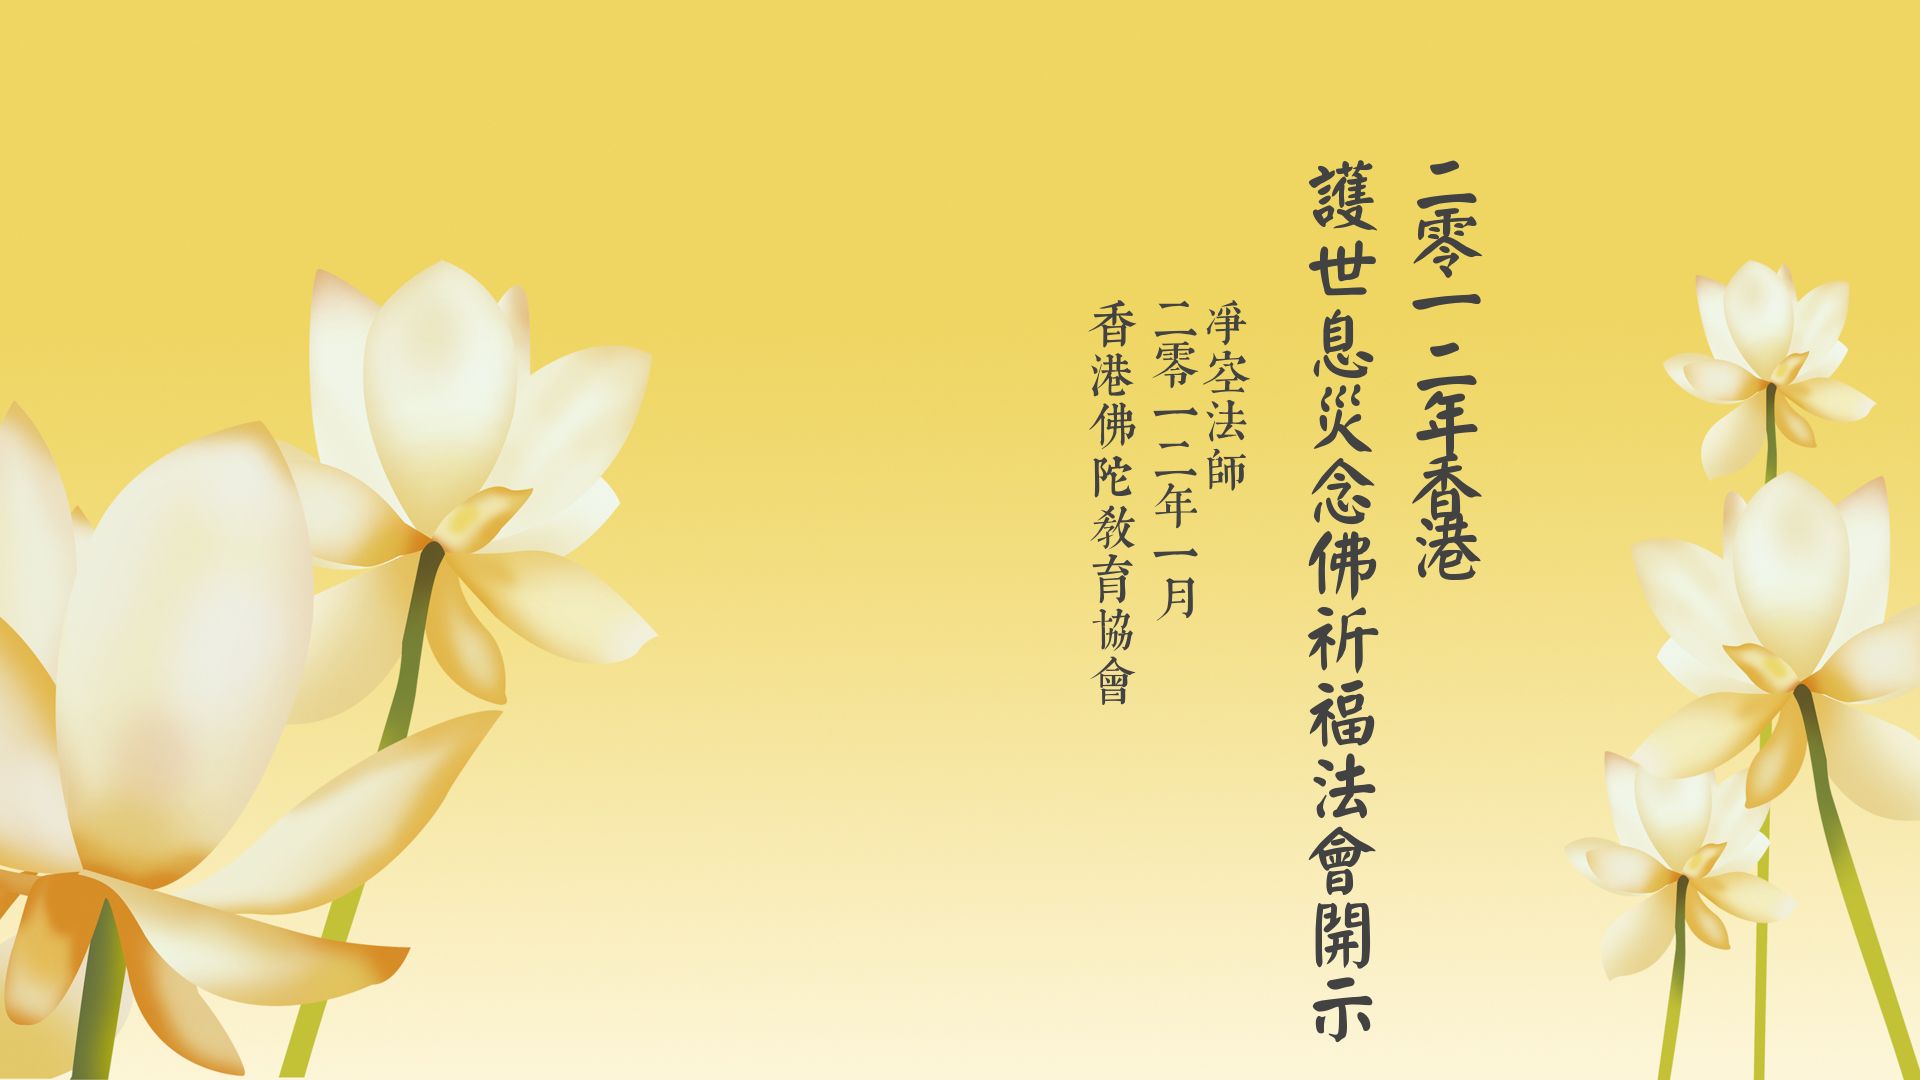 2012年香港護世息災念佛祈福法會開示